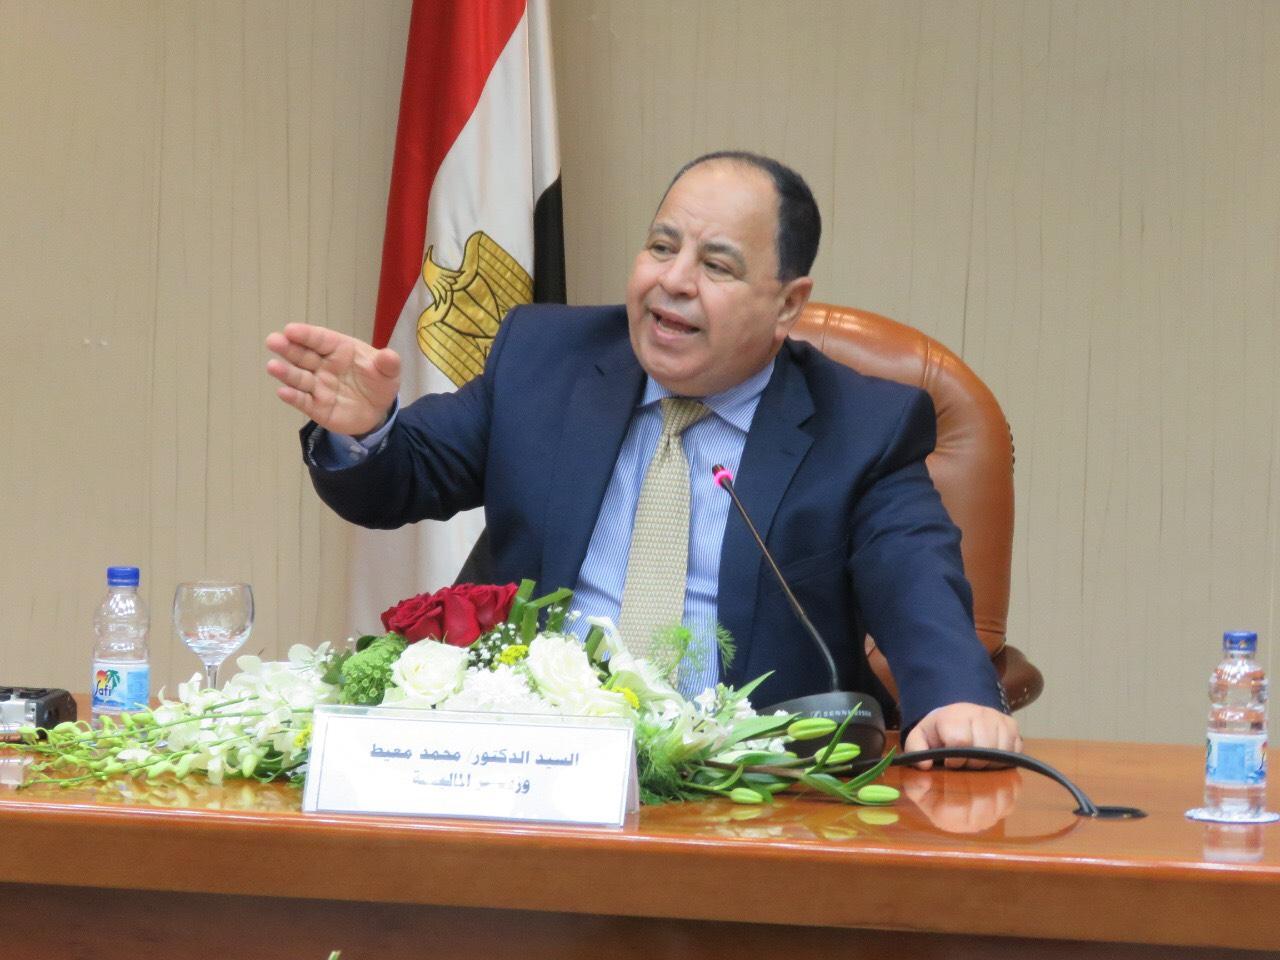   وزير المالية: مصر تسعى للحفاظ على المسار الاقتصادي الآمن في ظل «كورونا»